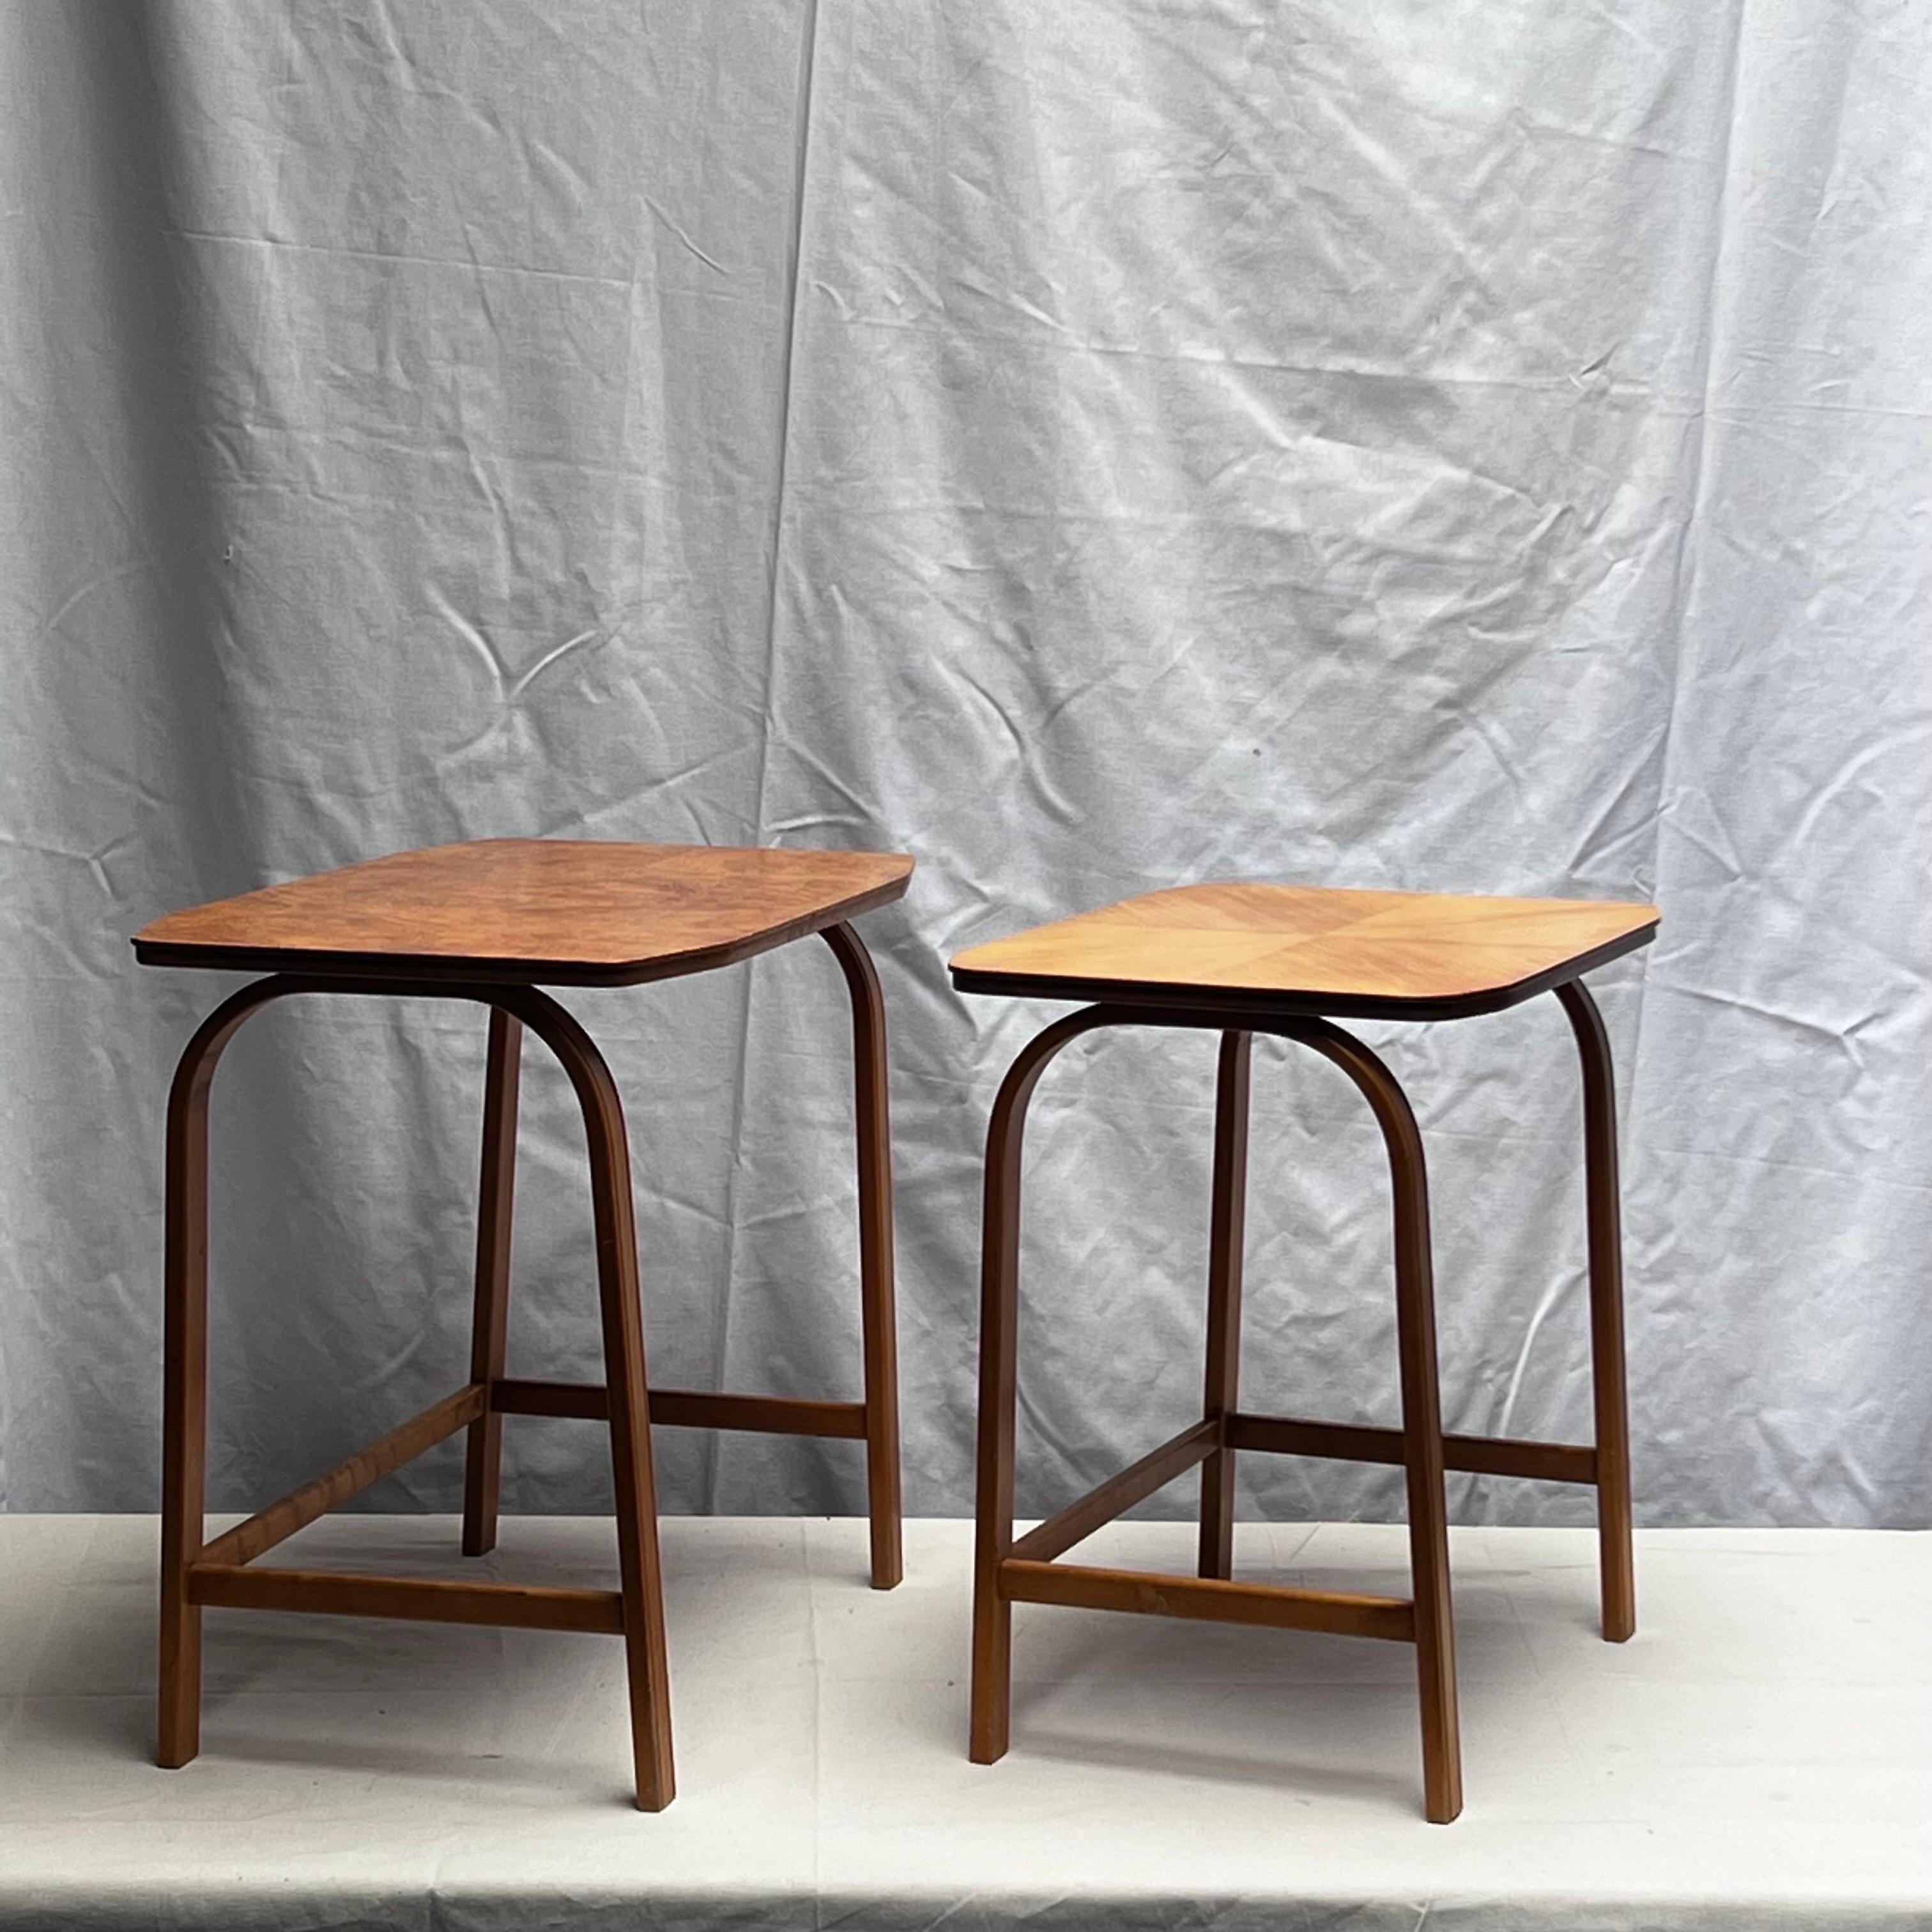 Ceci est un ensemble de tables gigognes de l'architecte Suédois Axel Larsson. Ils ont été produits par la firme SMF Bodafors début des années 1930. Le bois sont dans son état d'origine présentant une belle patine et une agréable trace du temps. Tout